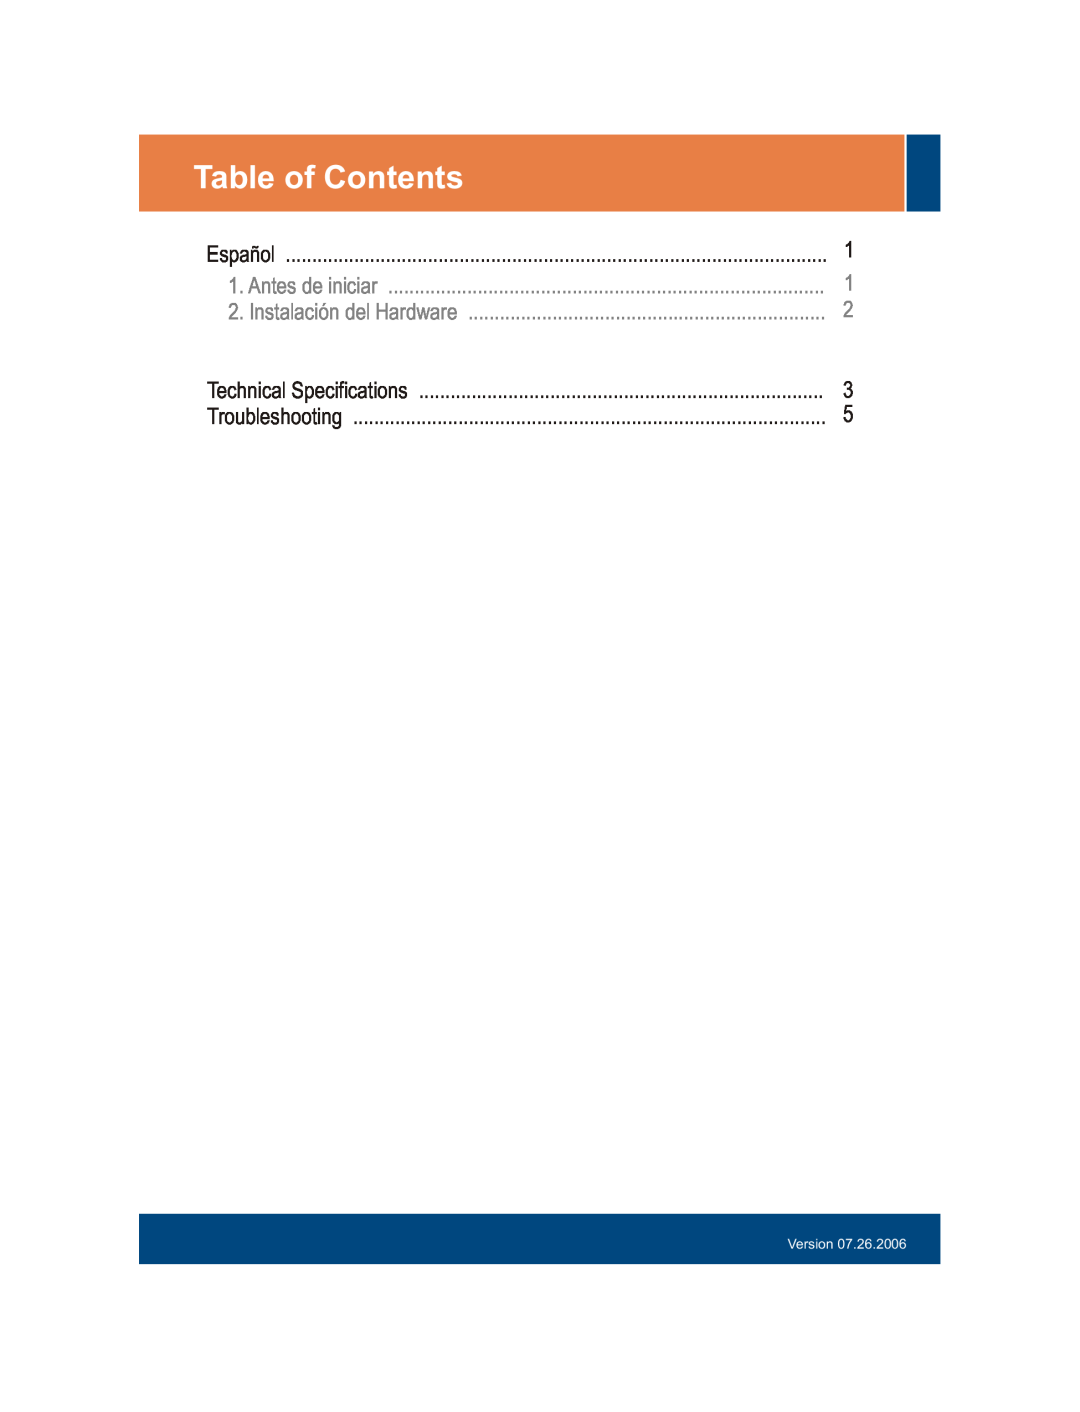 TRENDnet S5Pplus Table of Contents, Español, Antes de iniciar, Instalación del Hardware, Technical Specifications, Version 